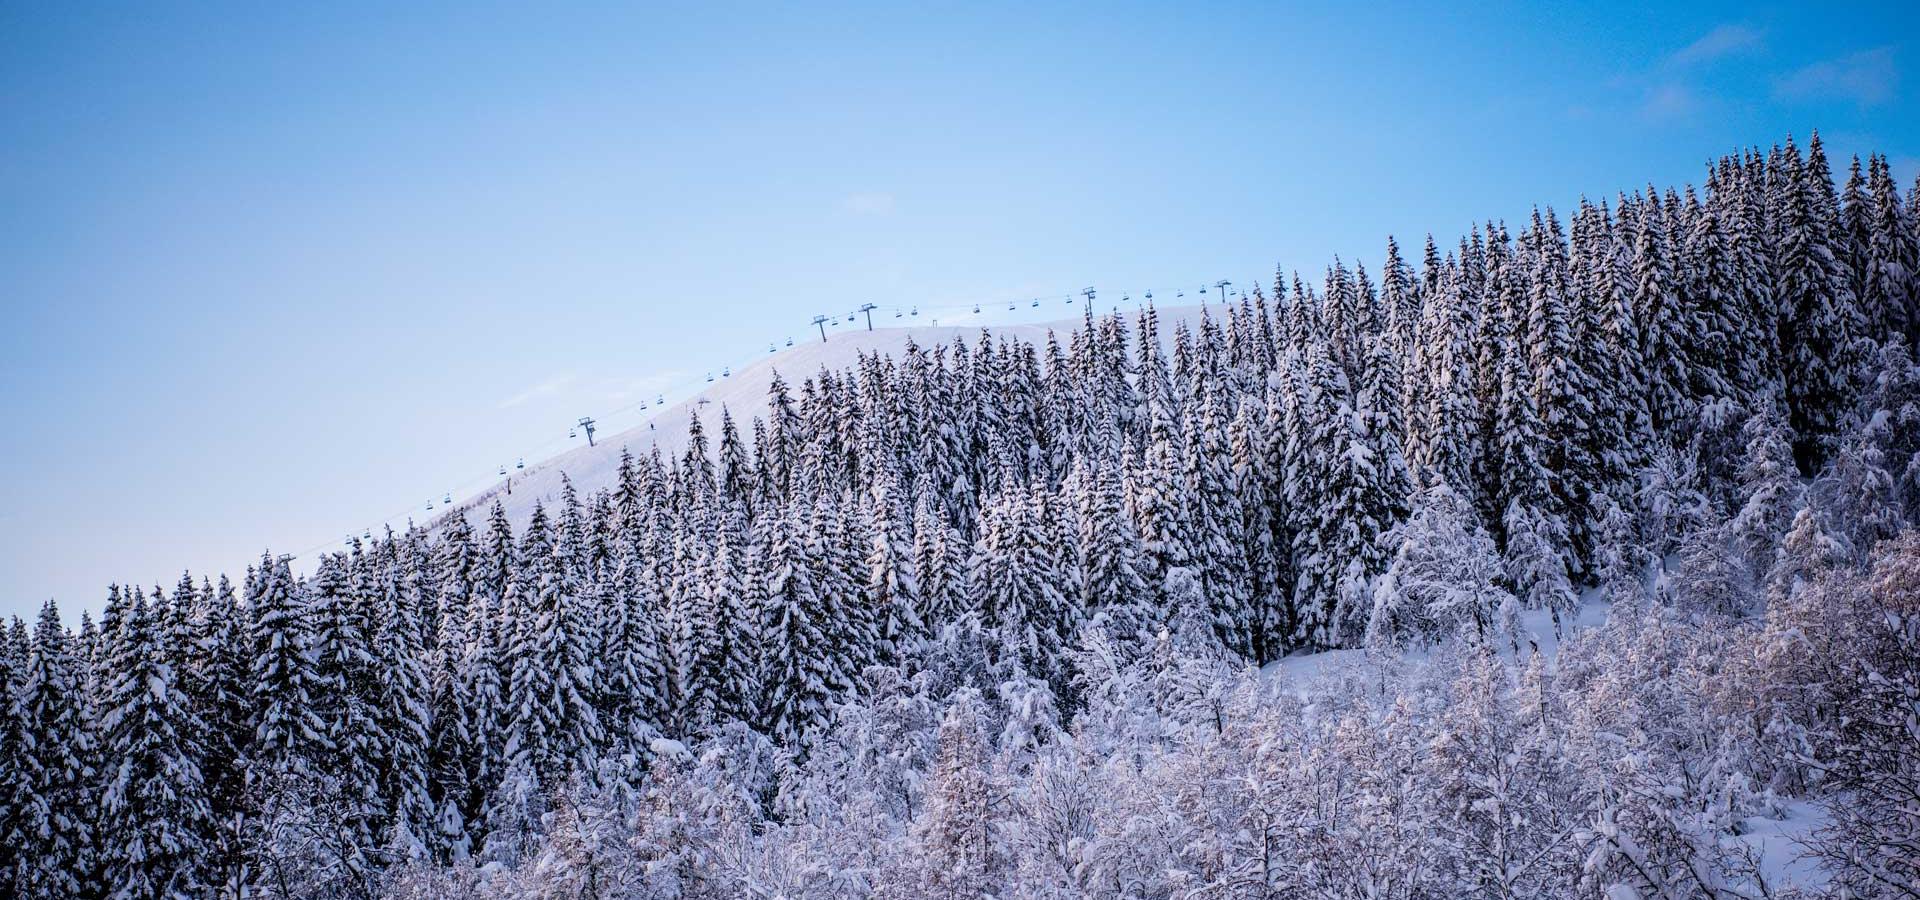 Myrkdalen Fjellandsby utvidar med fleir alpinbakkar